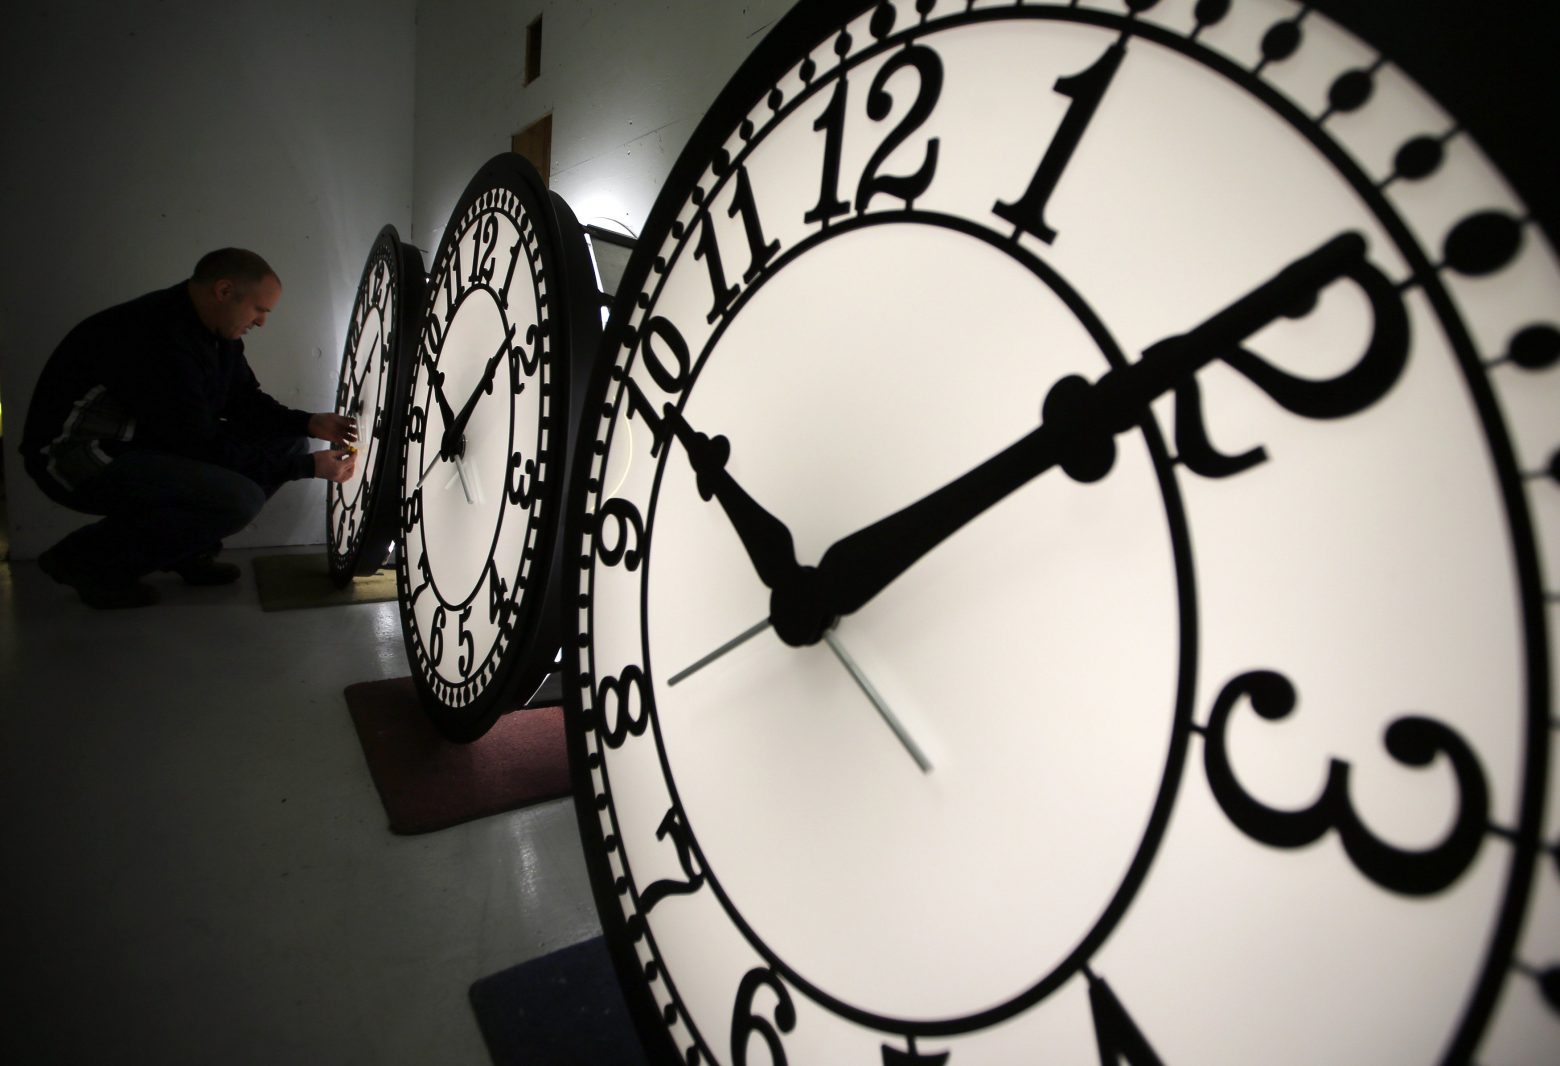 Τι ώρα είναι; Νέα ατομικά ρολόγια απαντούν με ακρίβεια 18 δεκαδικών